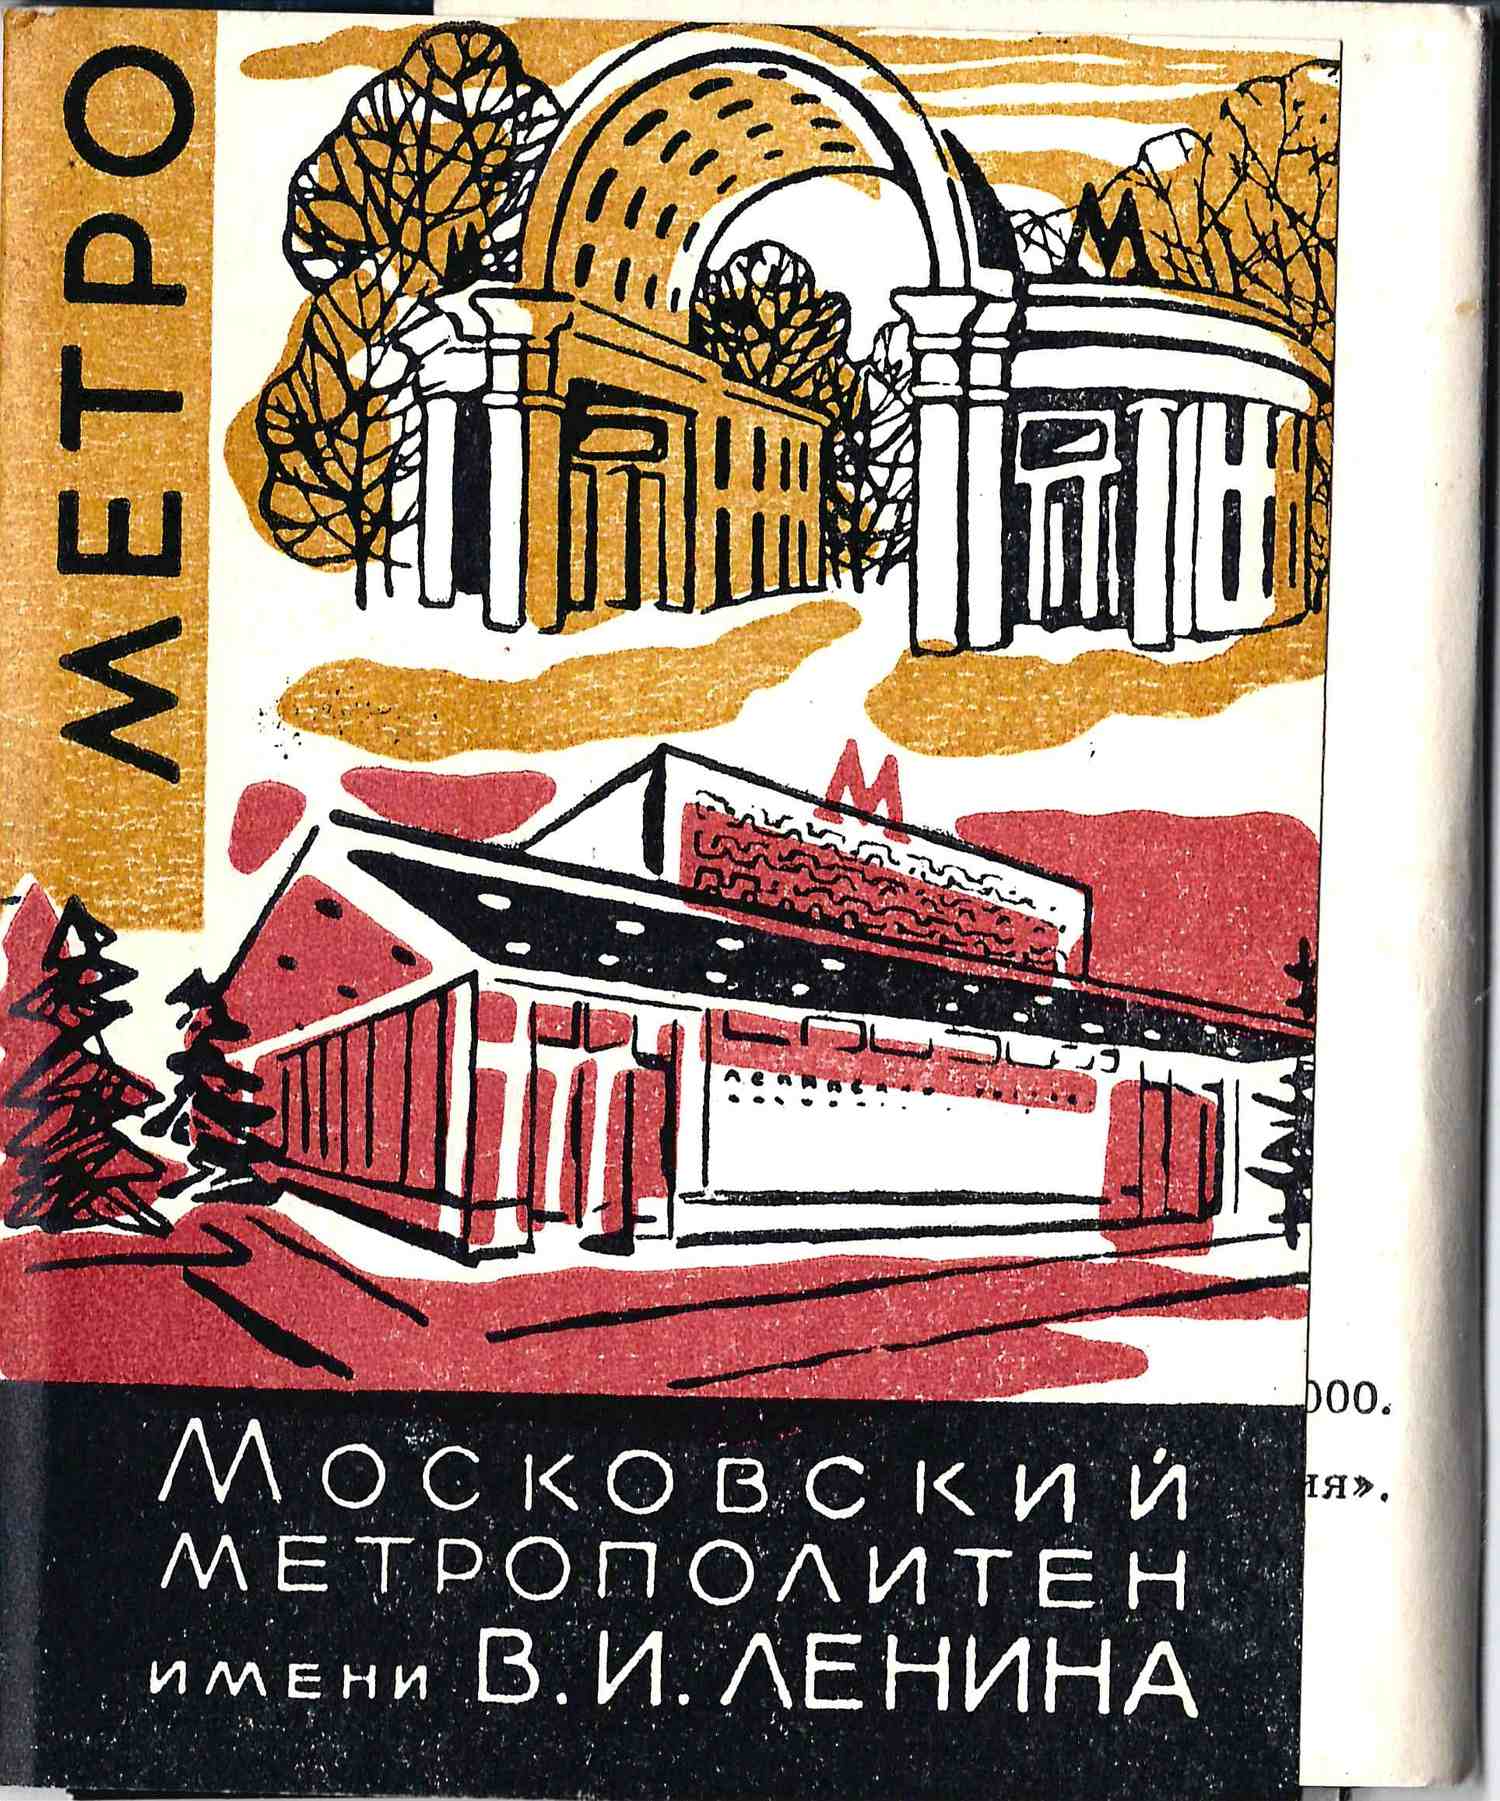 Комплект (16 фотографий) «Московский метрополитен имени В.И. Ленина» (М., 1963).